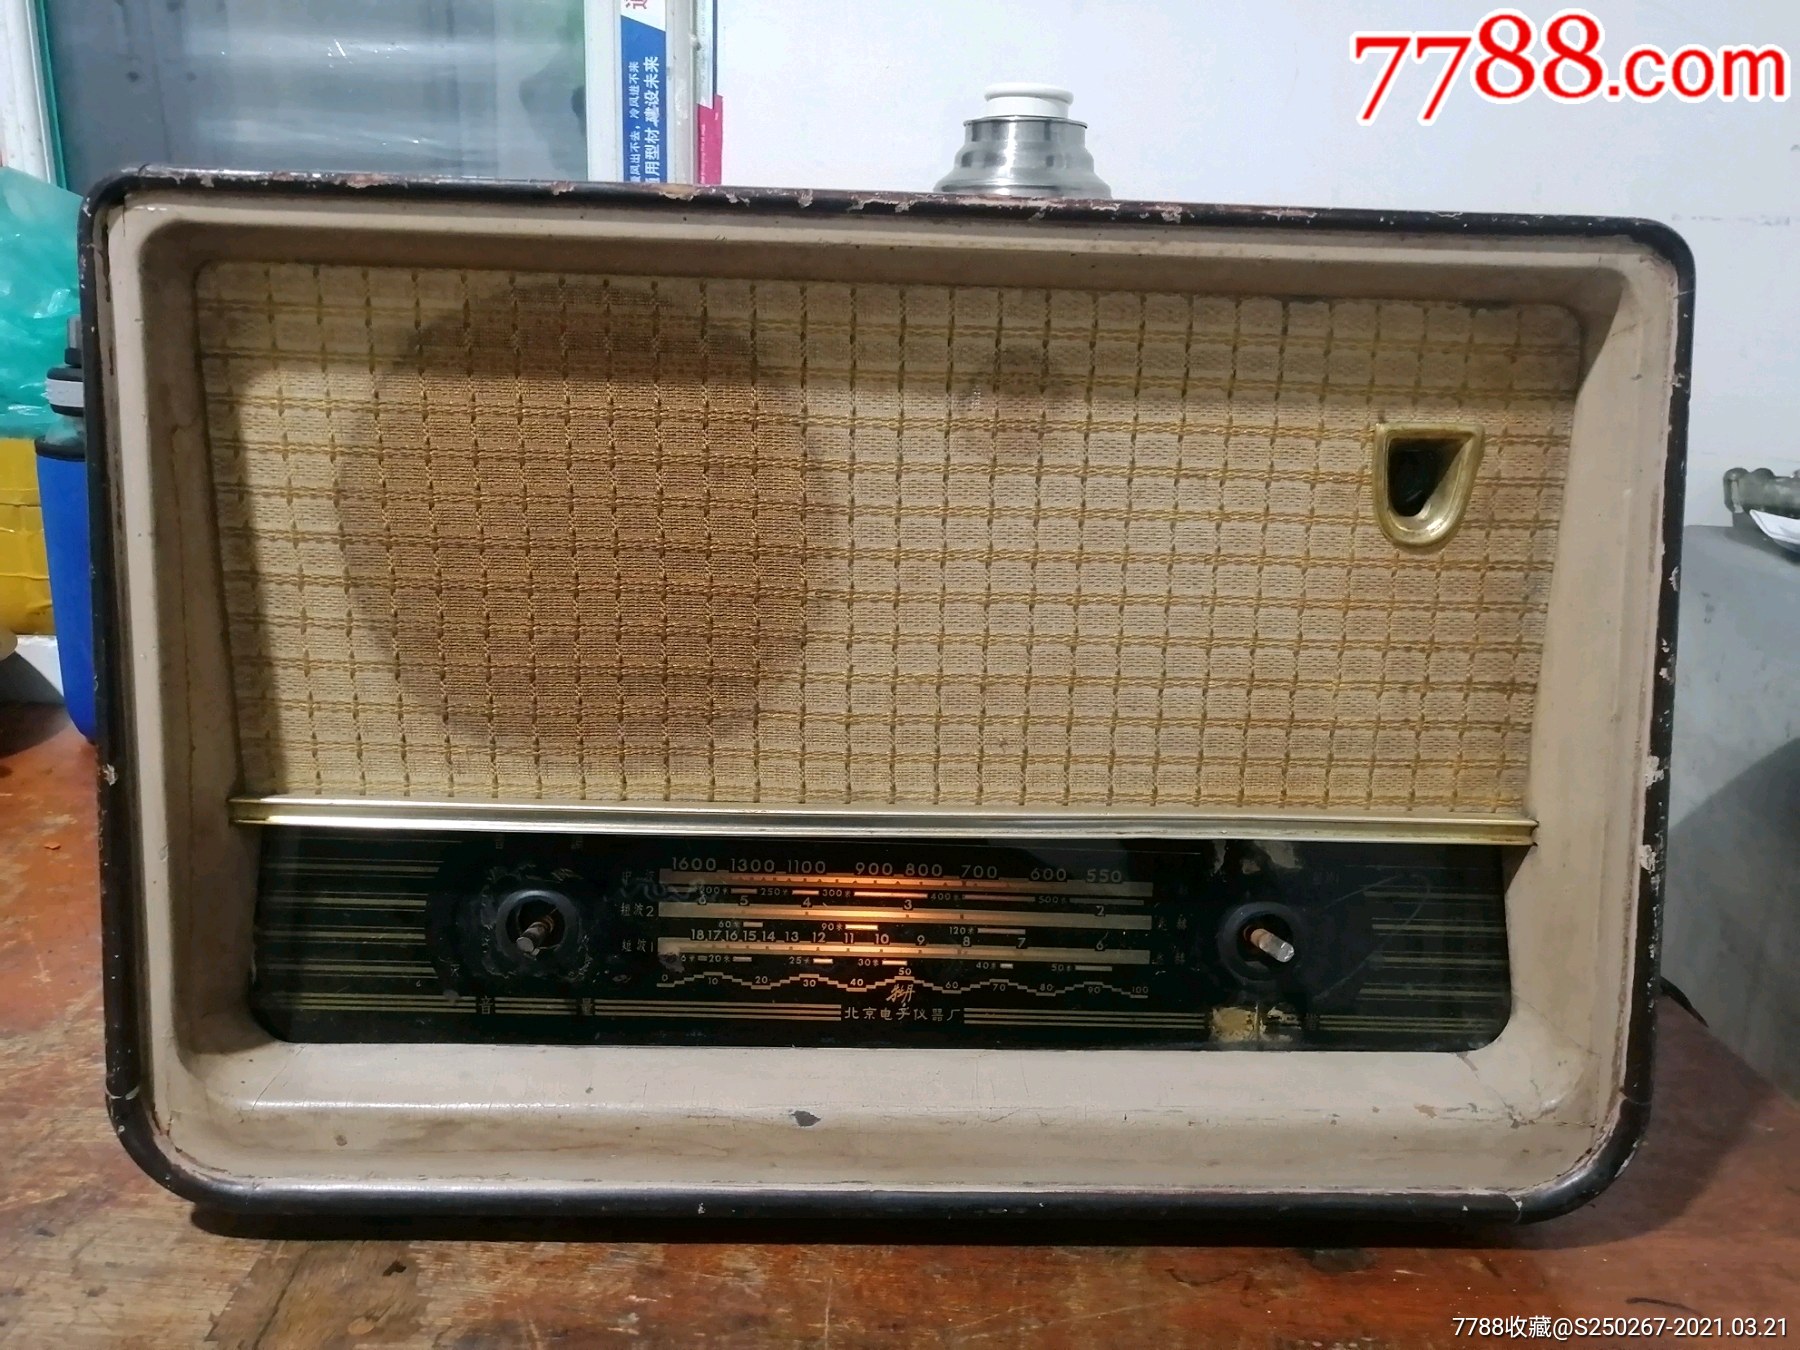 牡丹牌:电子管收音机